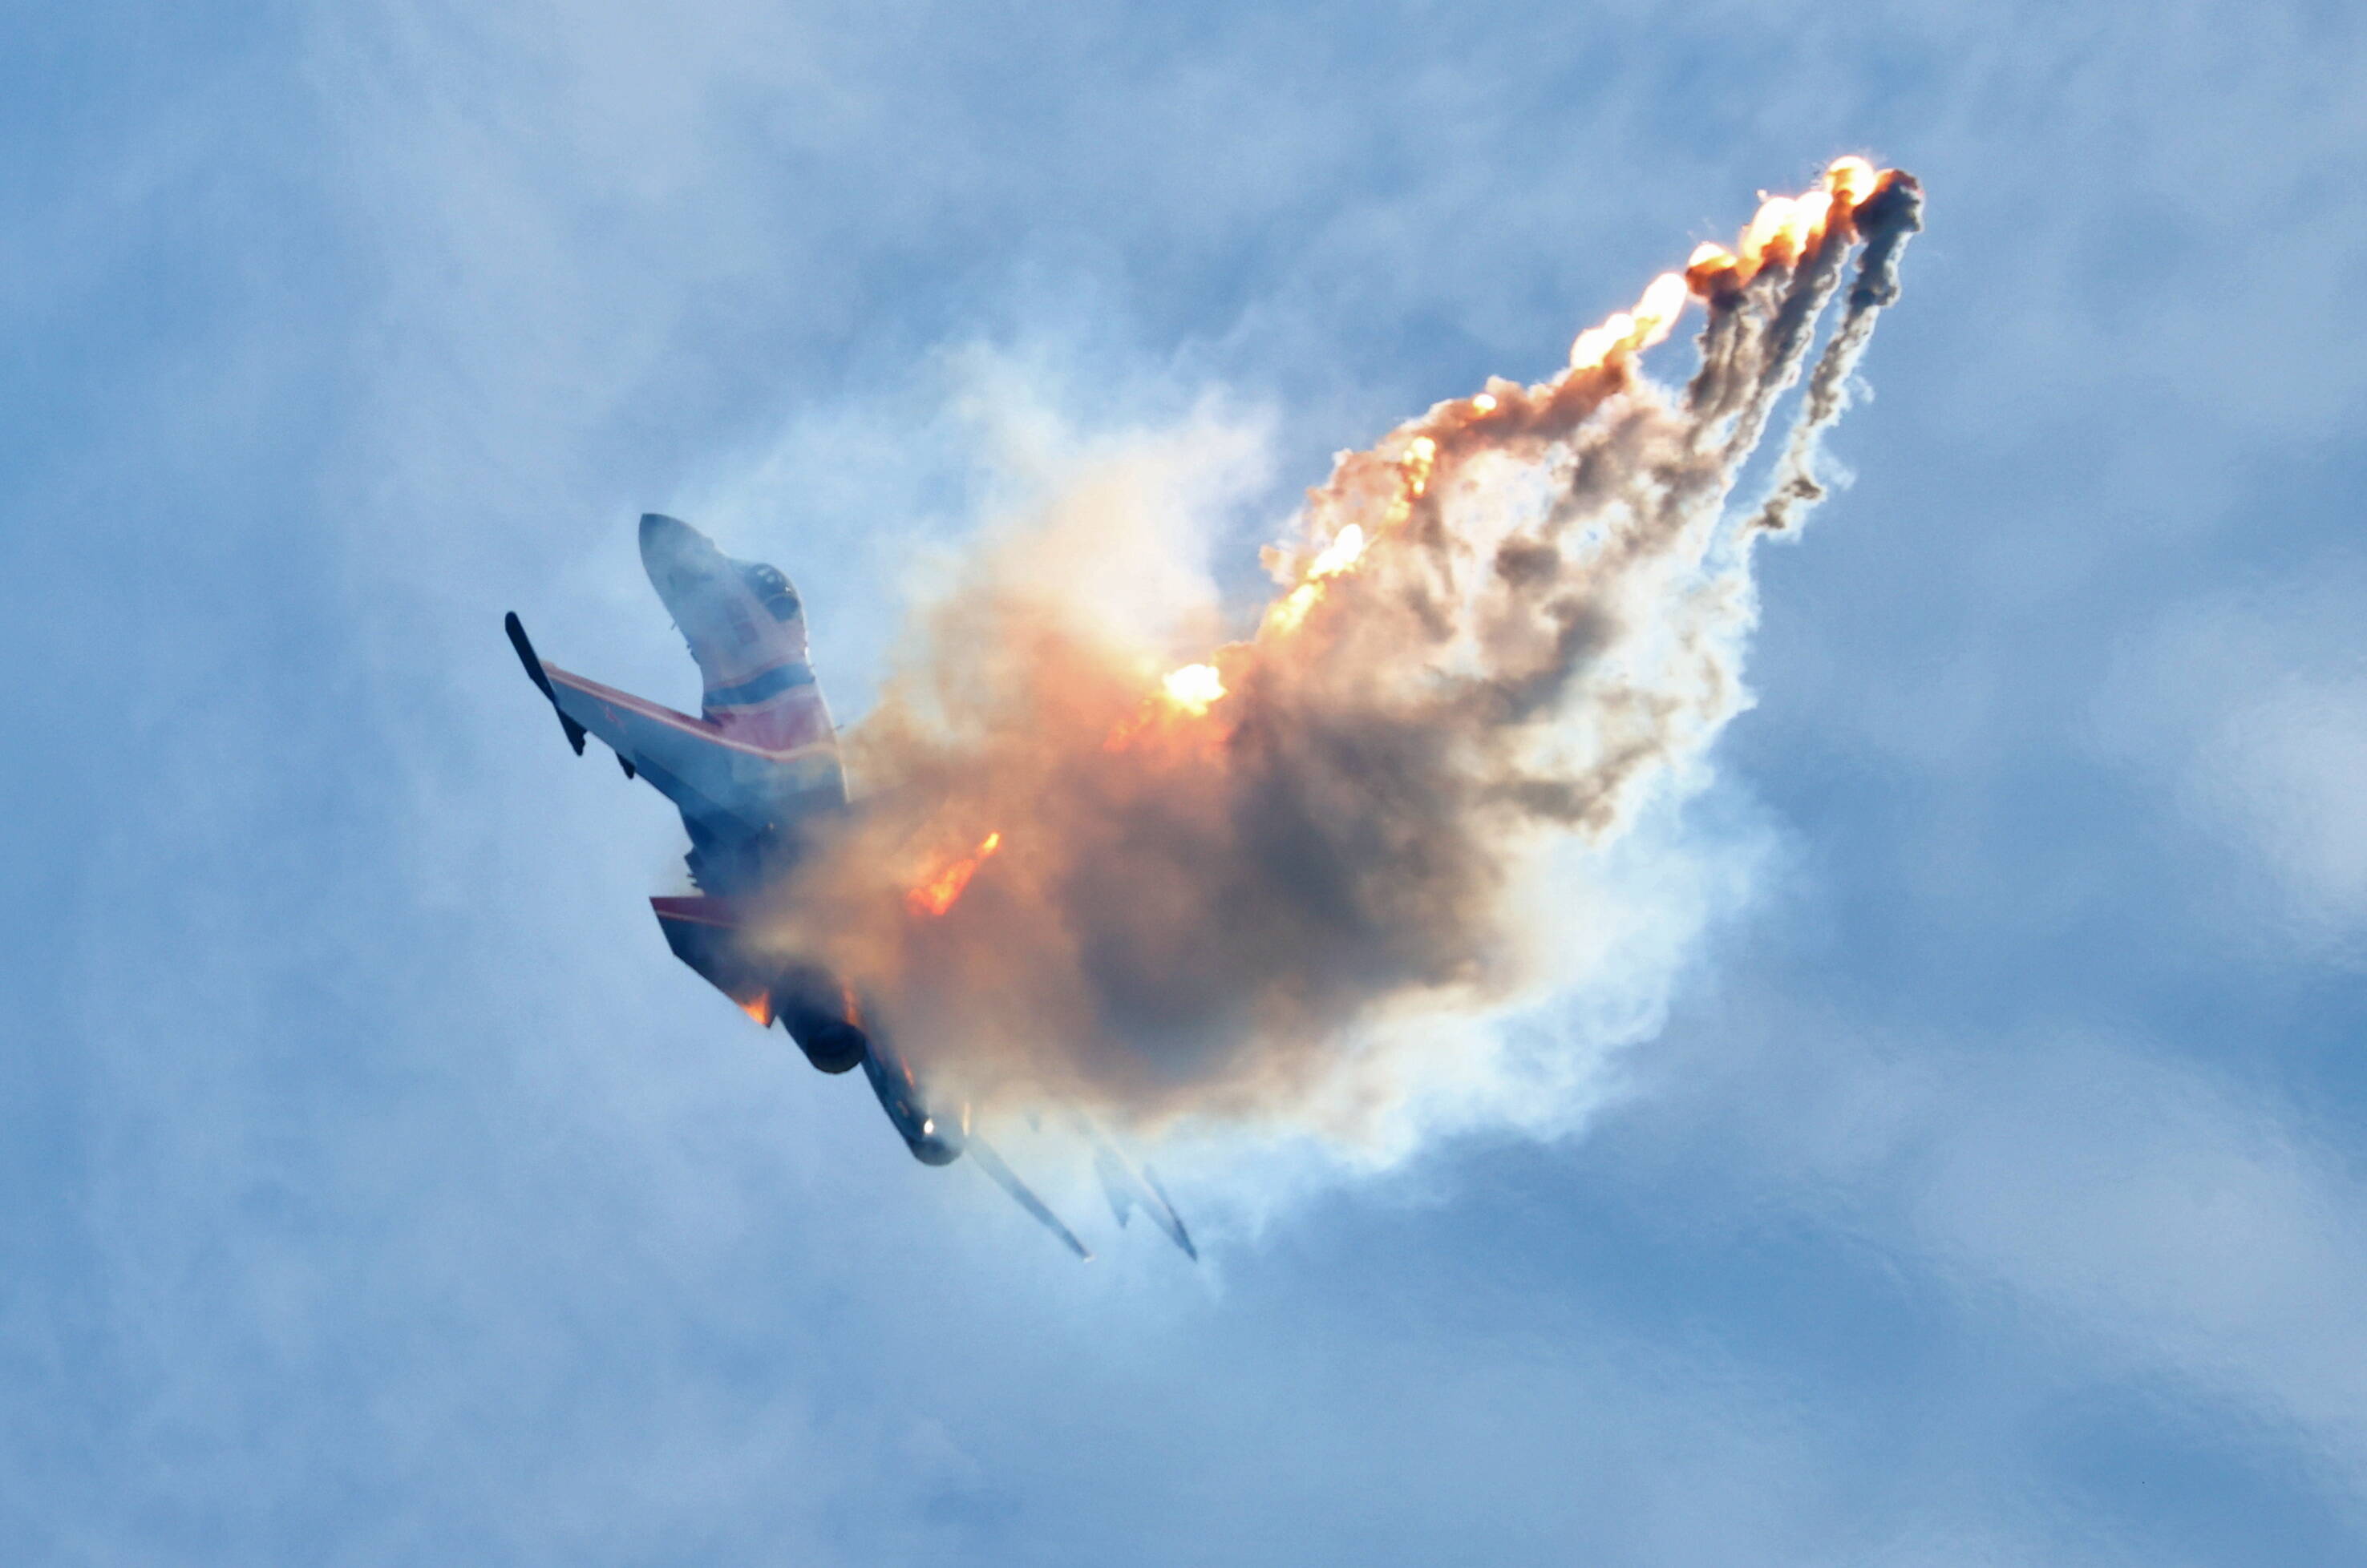 NATO-Kampfjet abgestürzt! Maschine explodiert in einem Feuerball auf einem Luftwaffen-Stützpunkt!